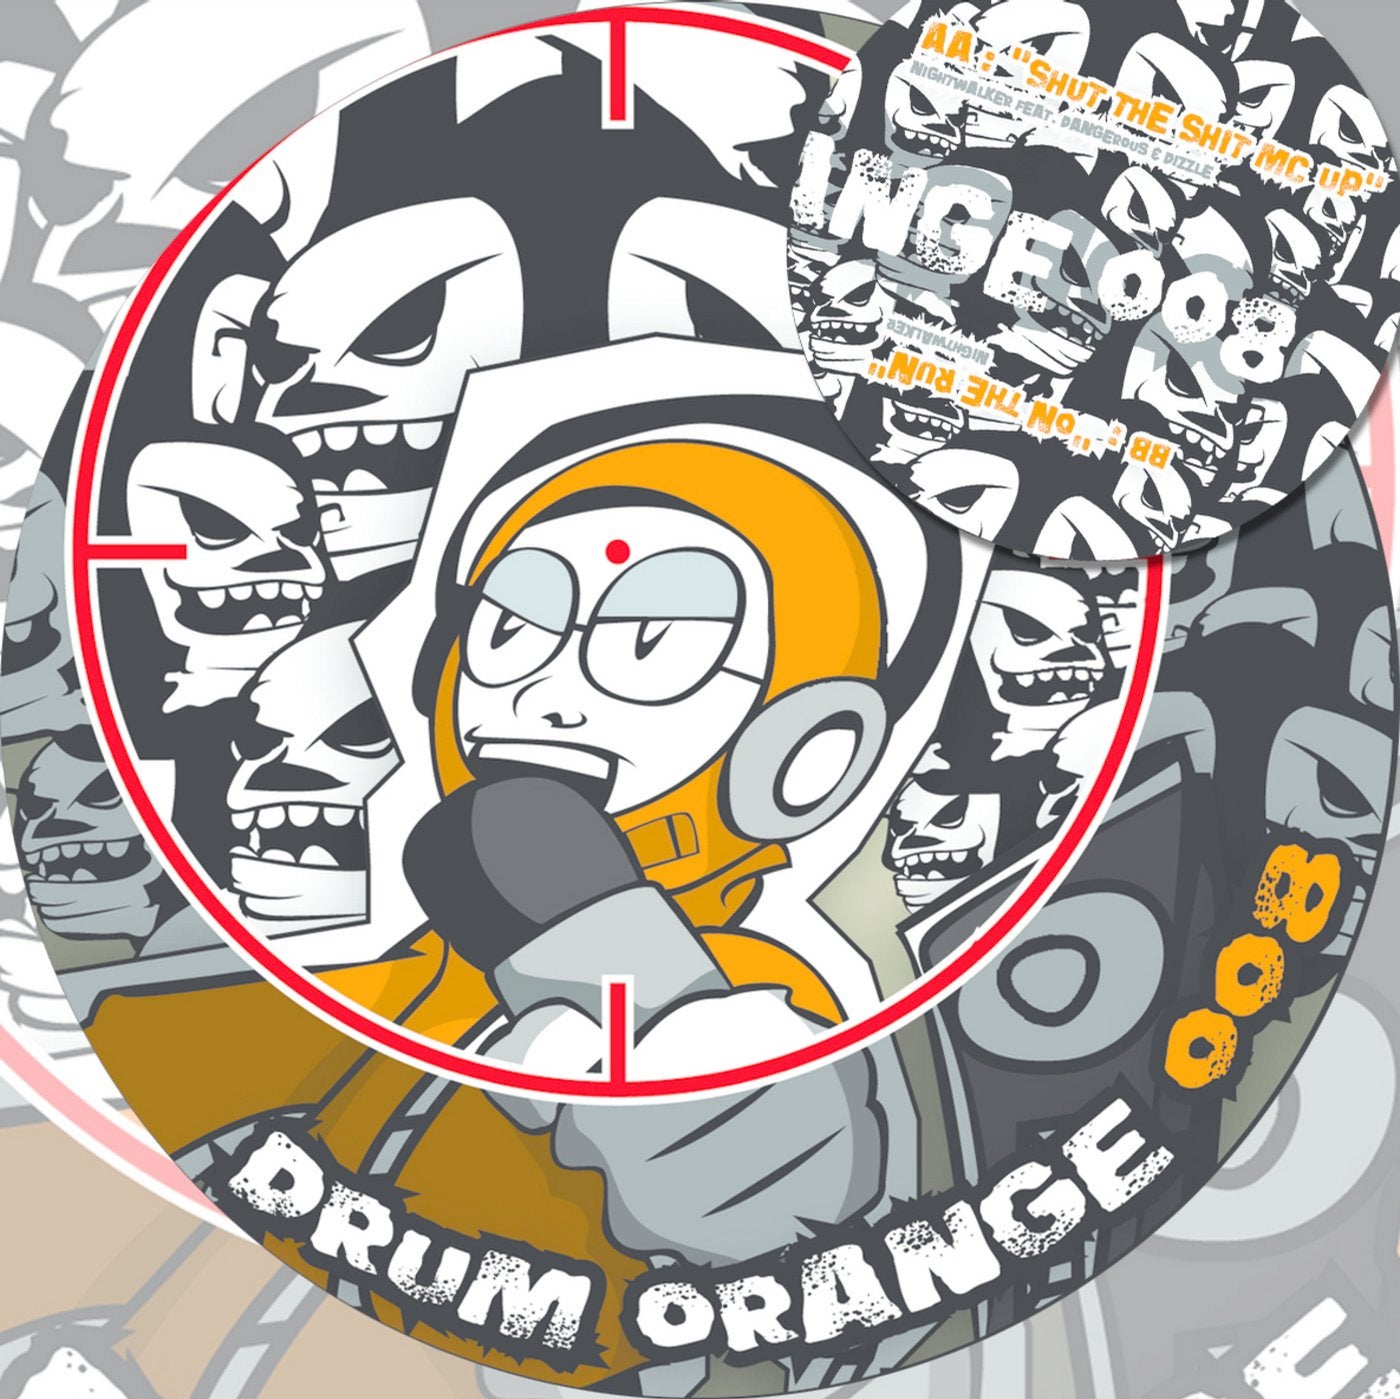 Drum Orange 008